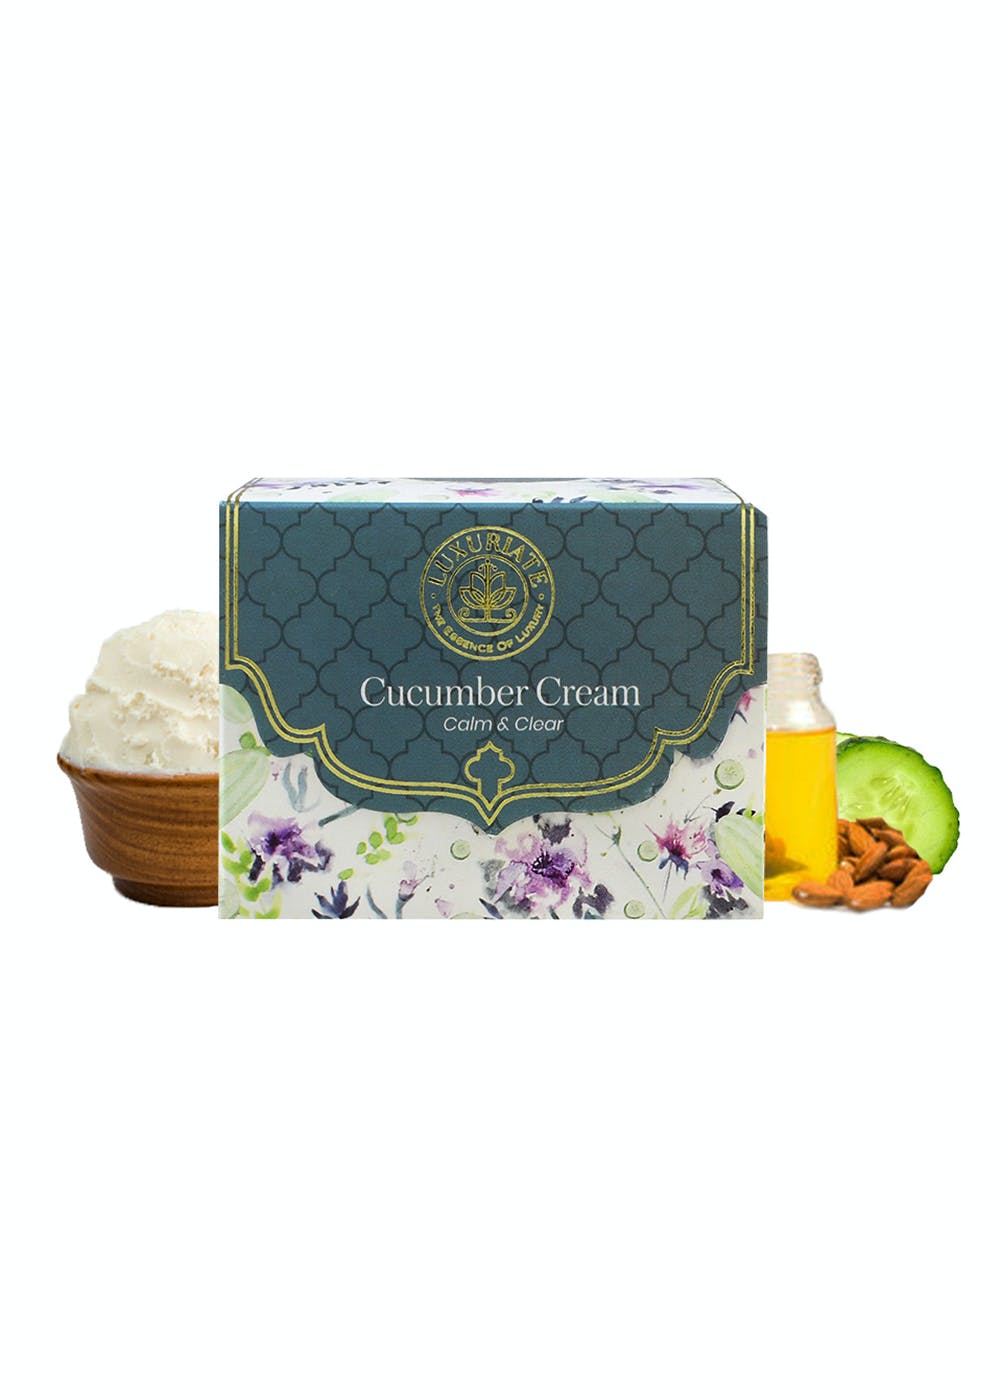 Cucumber Lotion & Cream